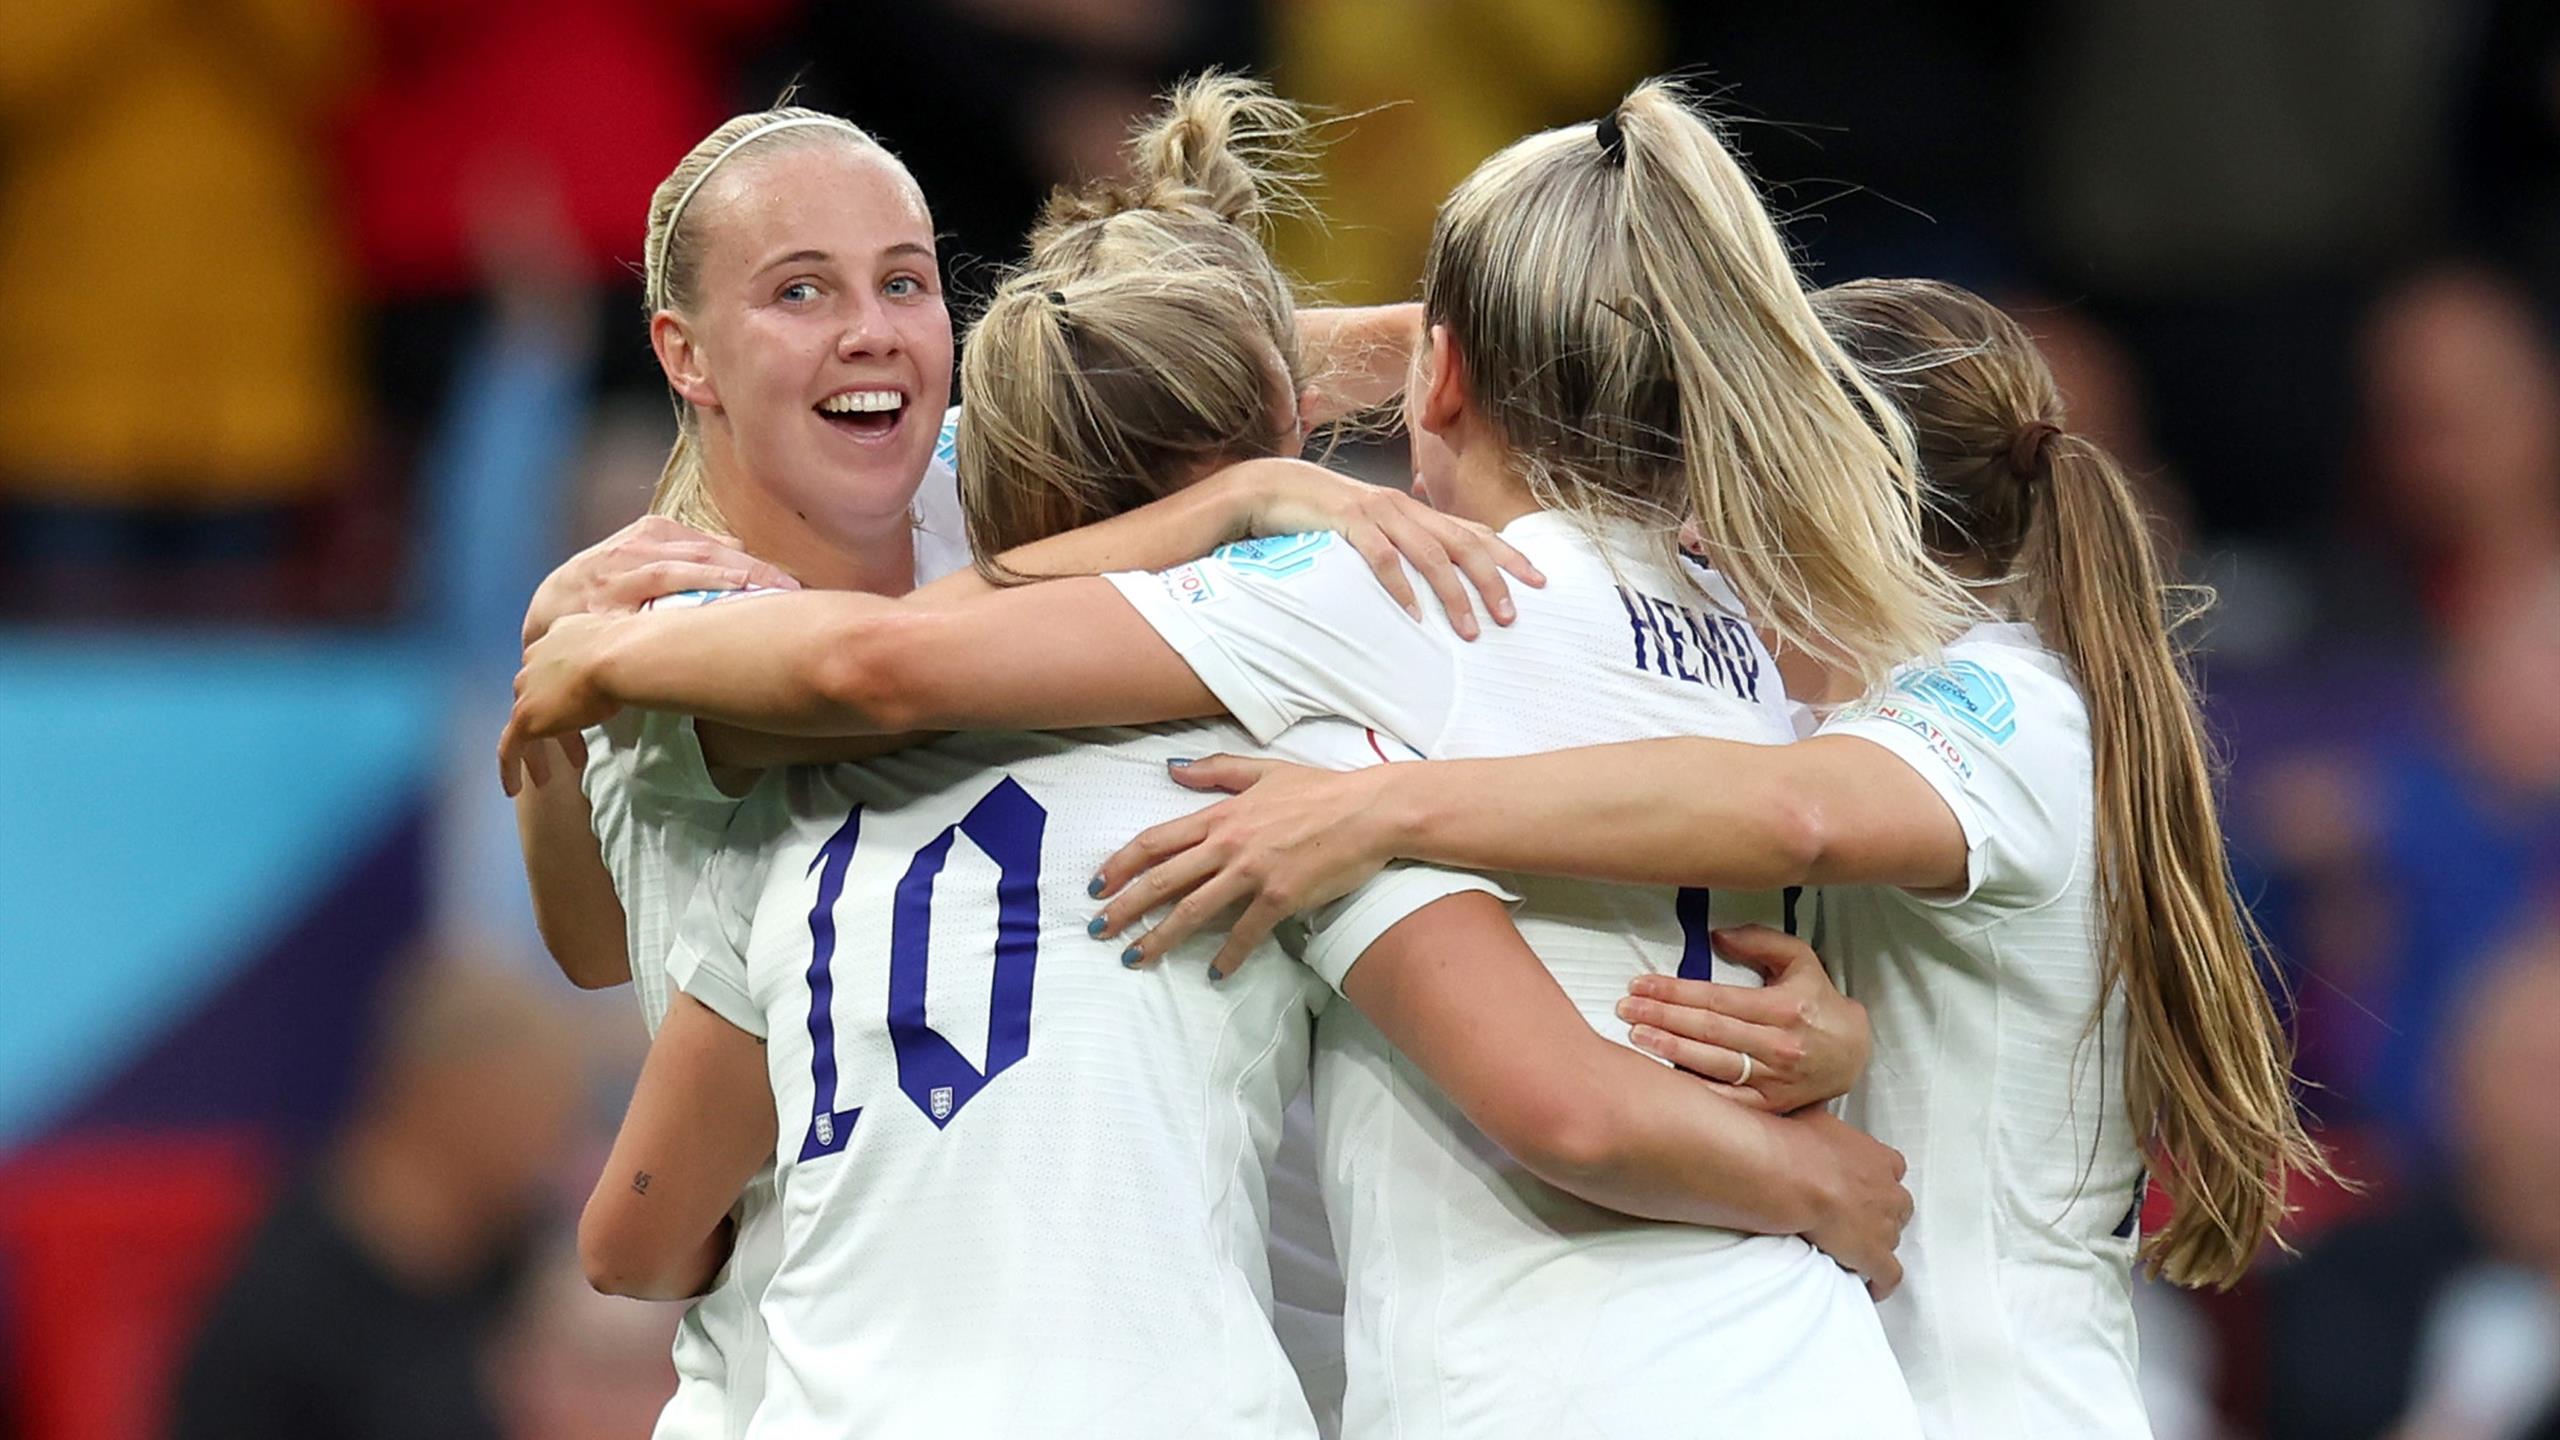 Euro féminin de football - L'Angleterre et Mead remportent le match d'ouverture face à l'Autriche (1-0) à Old Trafford - Eurosport FR